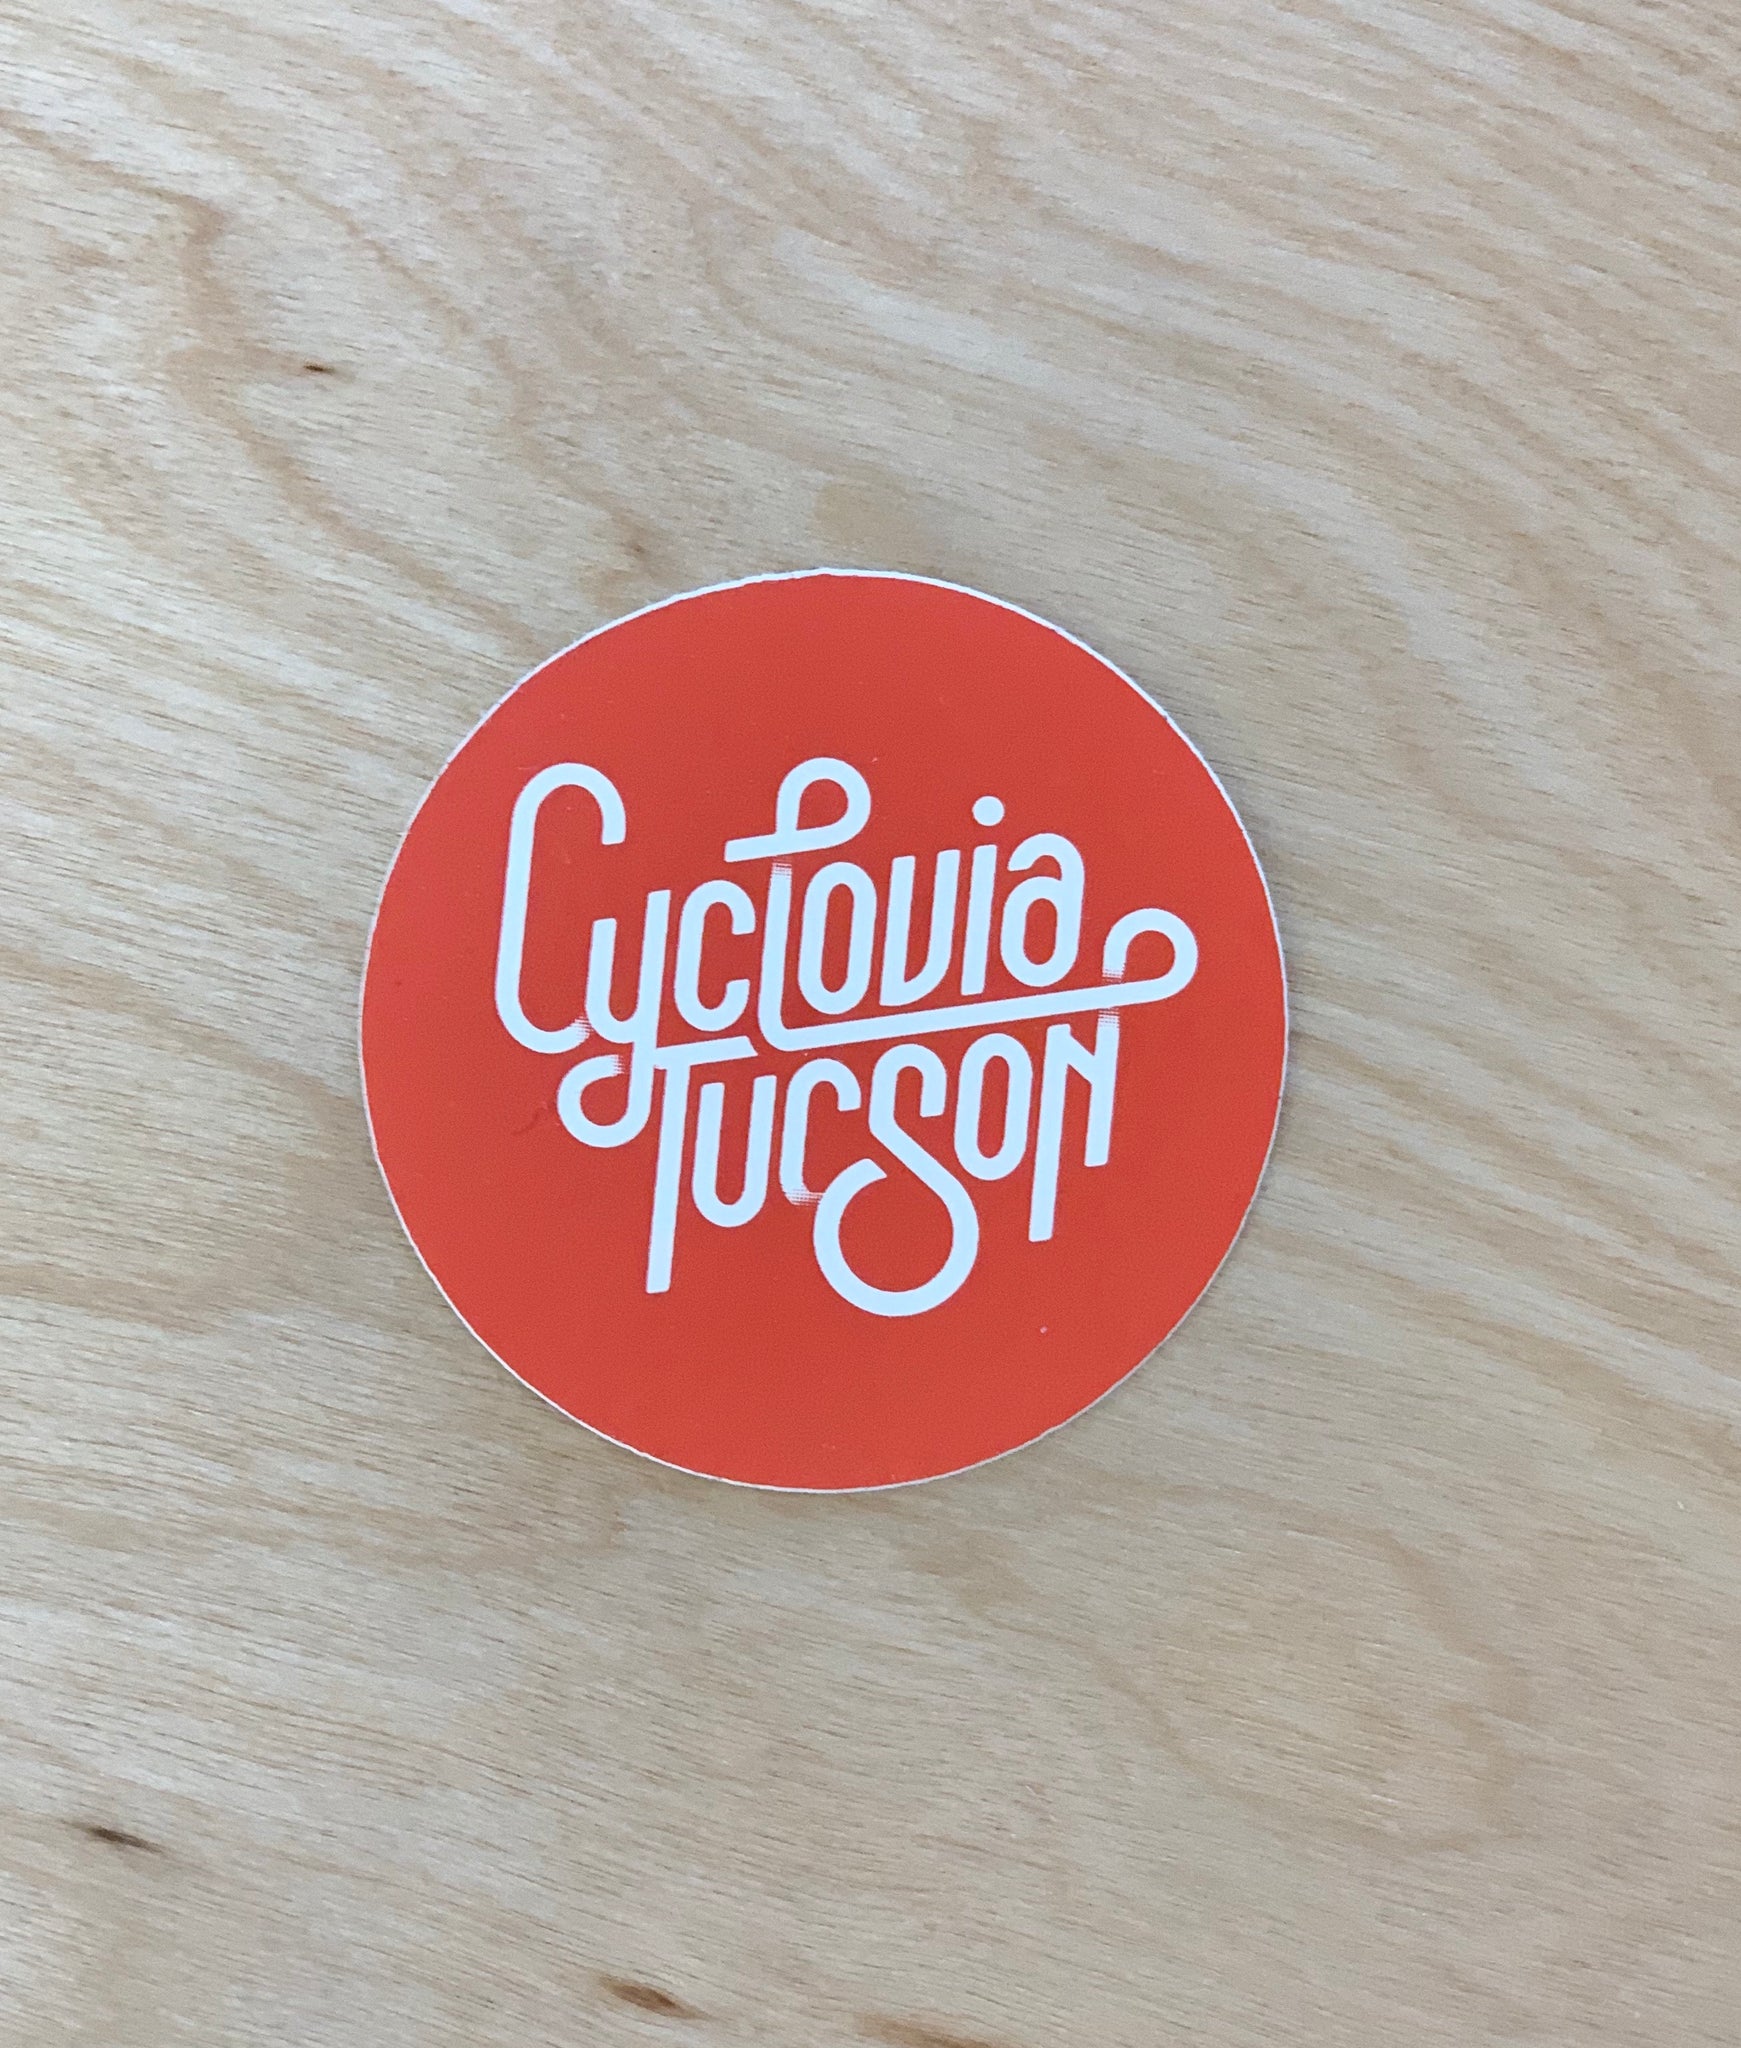 Cyclovia Tucson Stickers